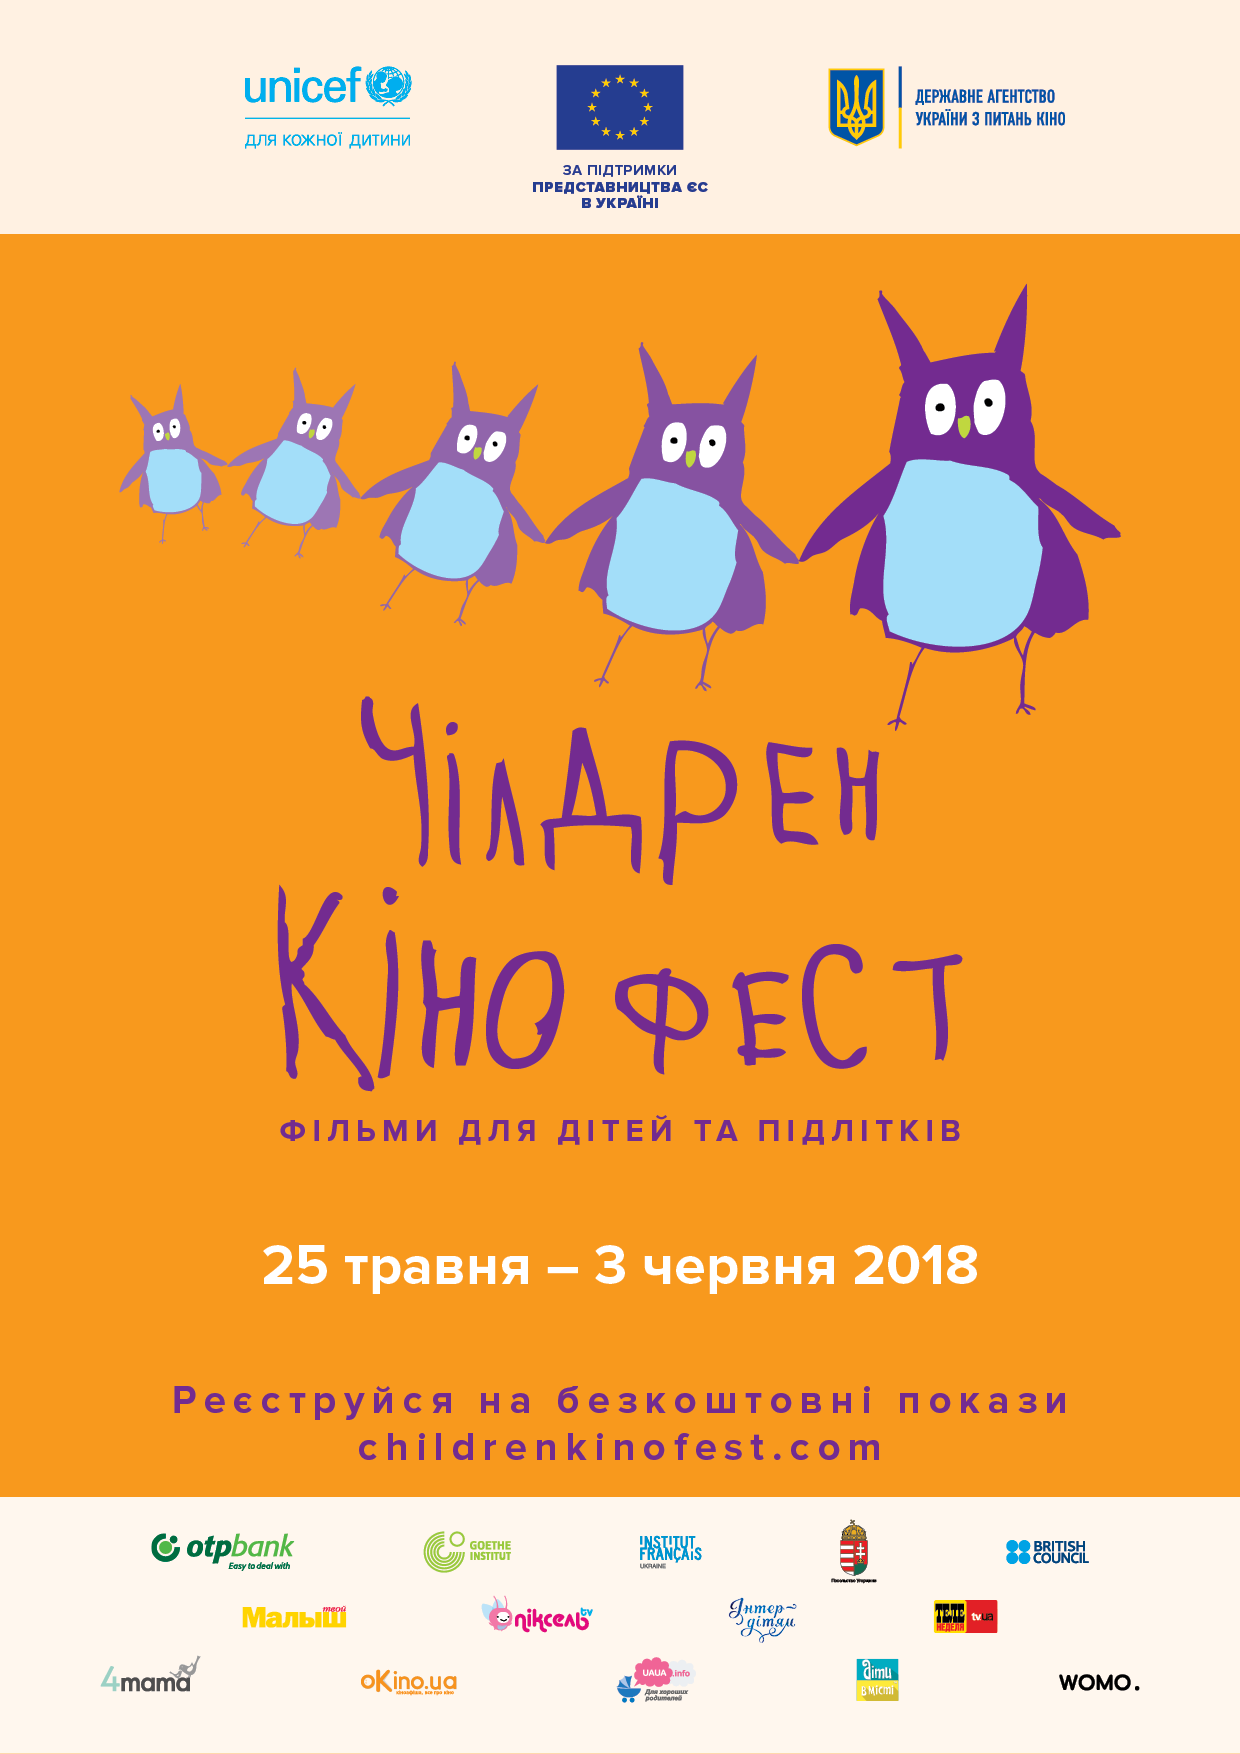 children-kinofest-nazovet-luchshiy-ukrainskiy-film-sozdannyy-detmi